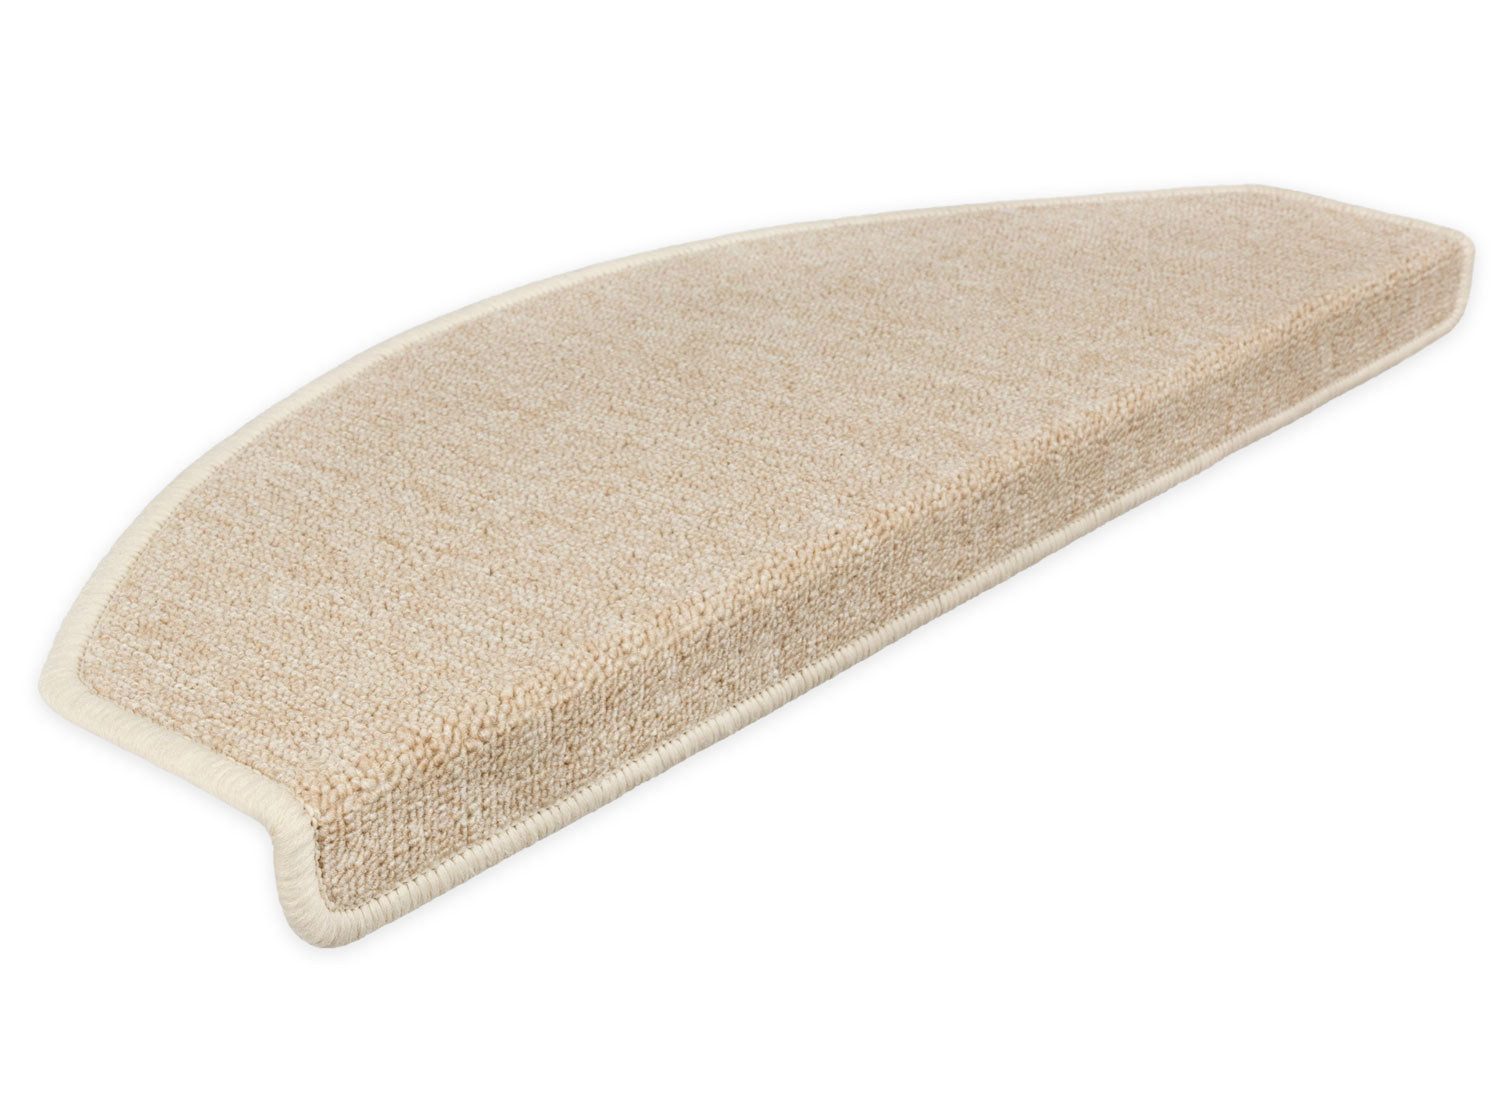 Stufenmatte Stufenmatten Rambo New Halbrund SparSet - Beige 15 Stück, Metzker®, halbrund, Höhe: 5 mm, 15 Stück im Set - Beige